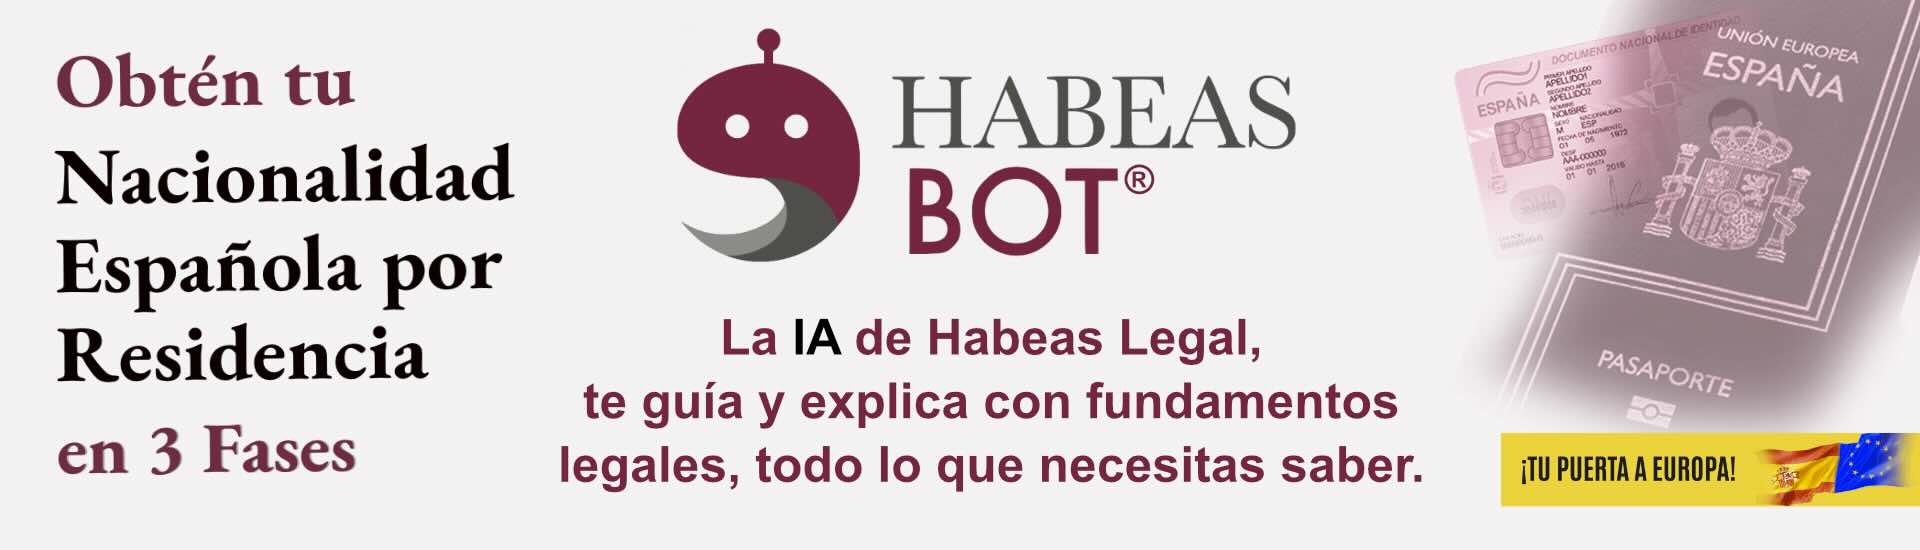 Habeas BOT asistente virtual de Habeas Legal en Nacionalidad Espanola por Residencia 2 - Abogados Internacionales especializados en Extranjería, Inmigración y Laboral